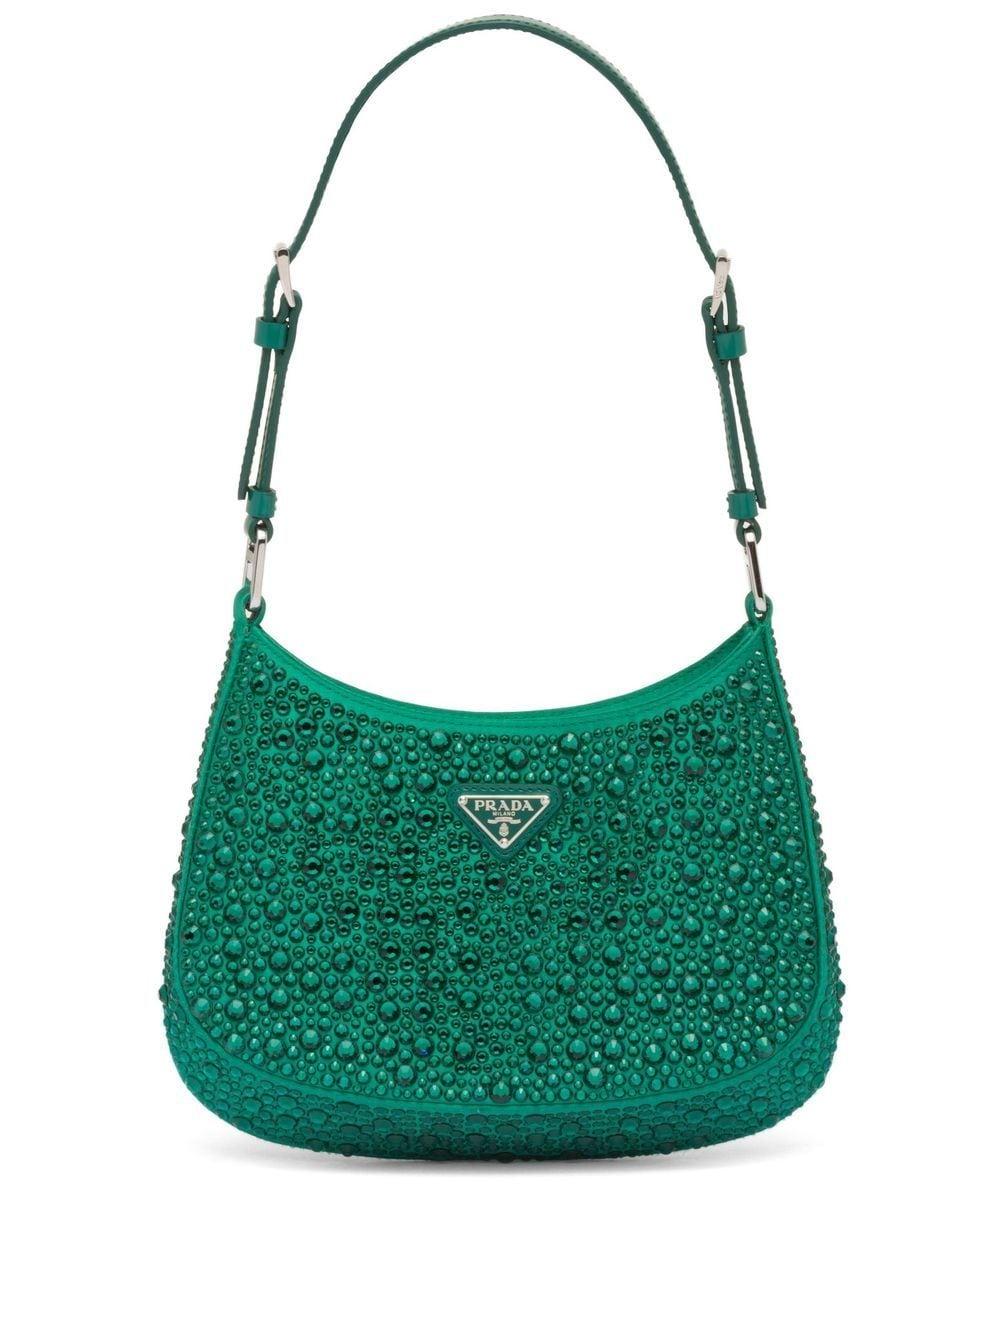 Prada Cleo Crystal-embellished Shoulder Bag in Green | Lyst